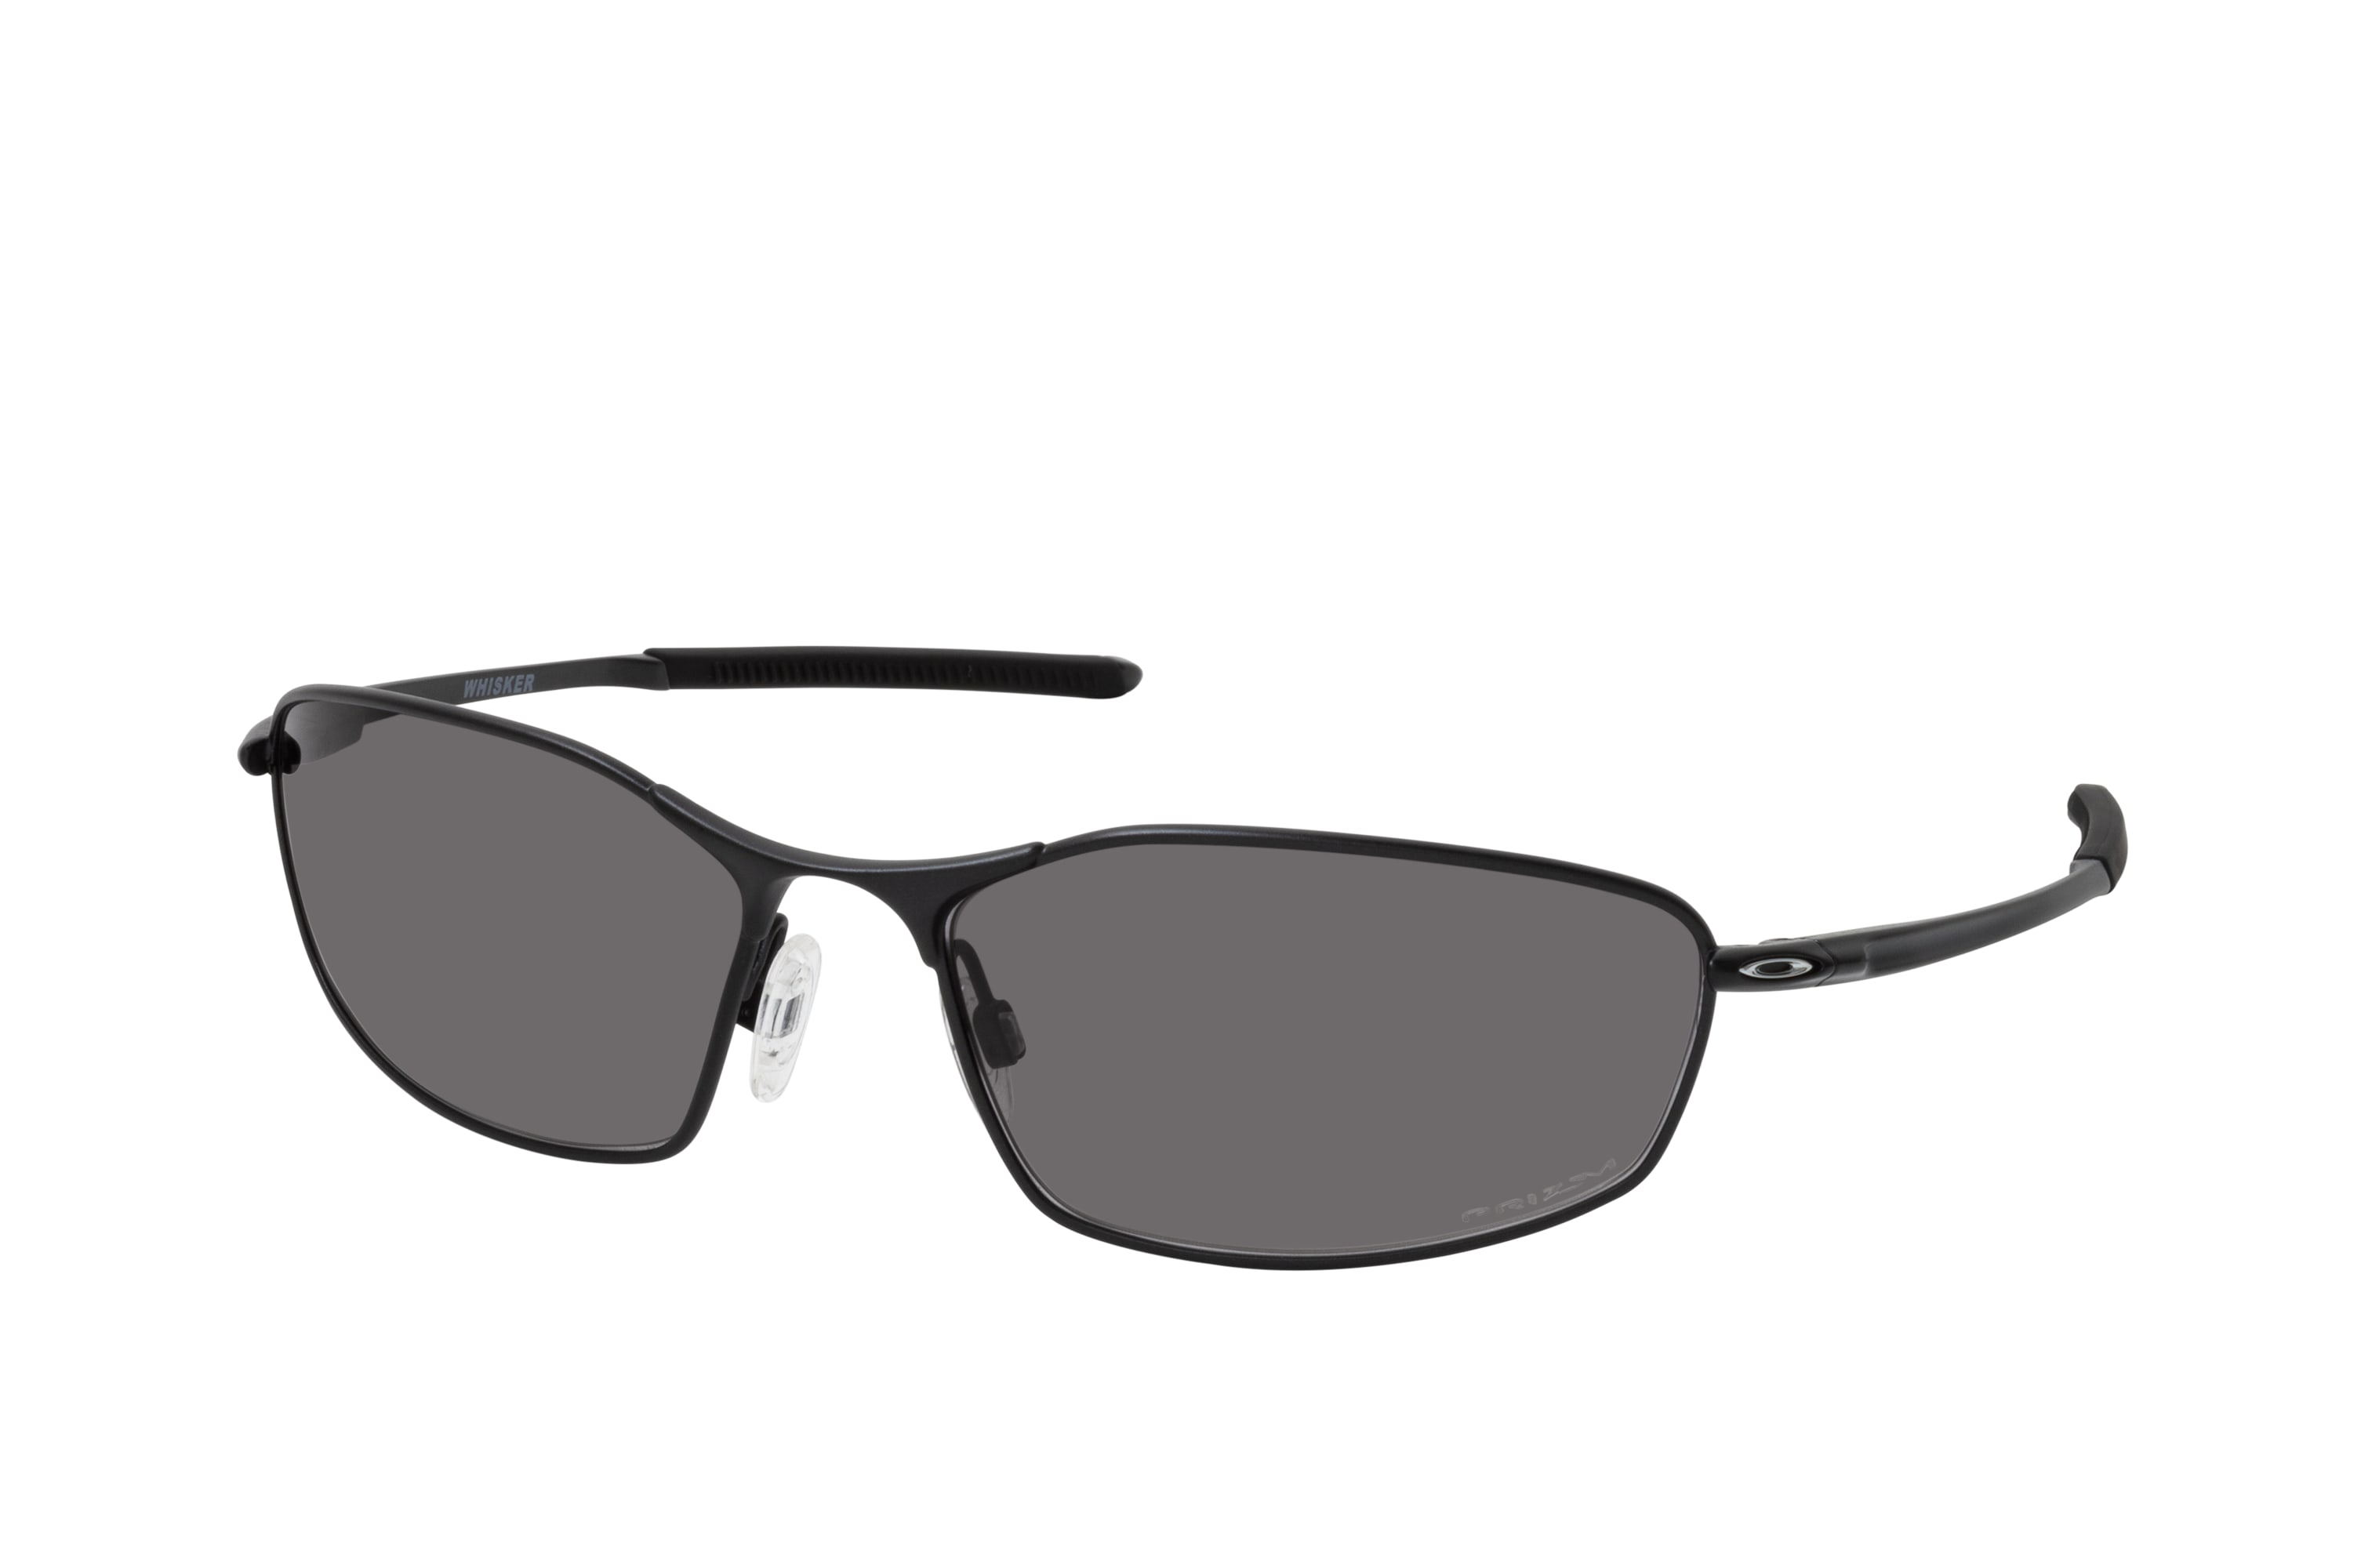 Buy Oakley Whisker OO 4141 08 Sunglasses